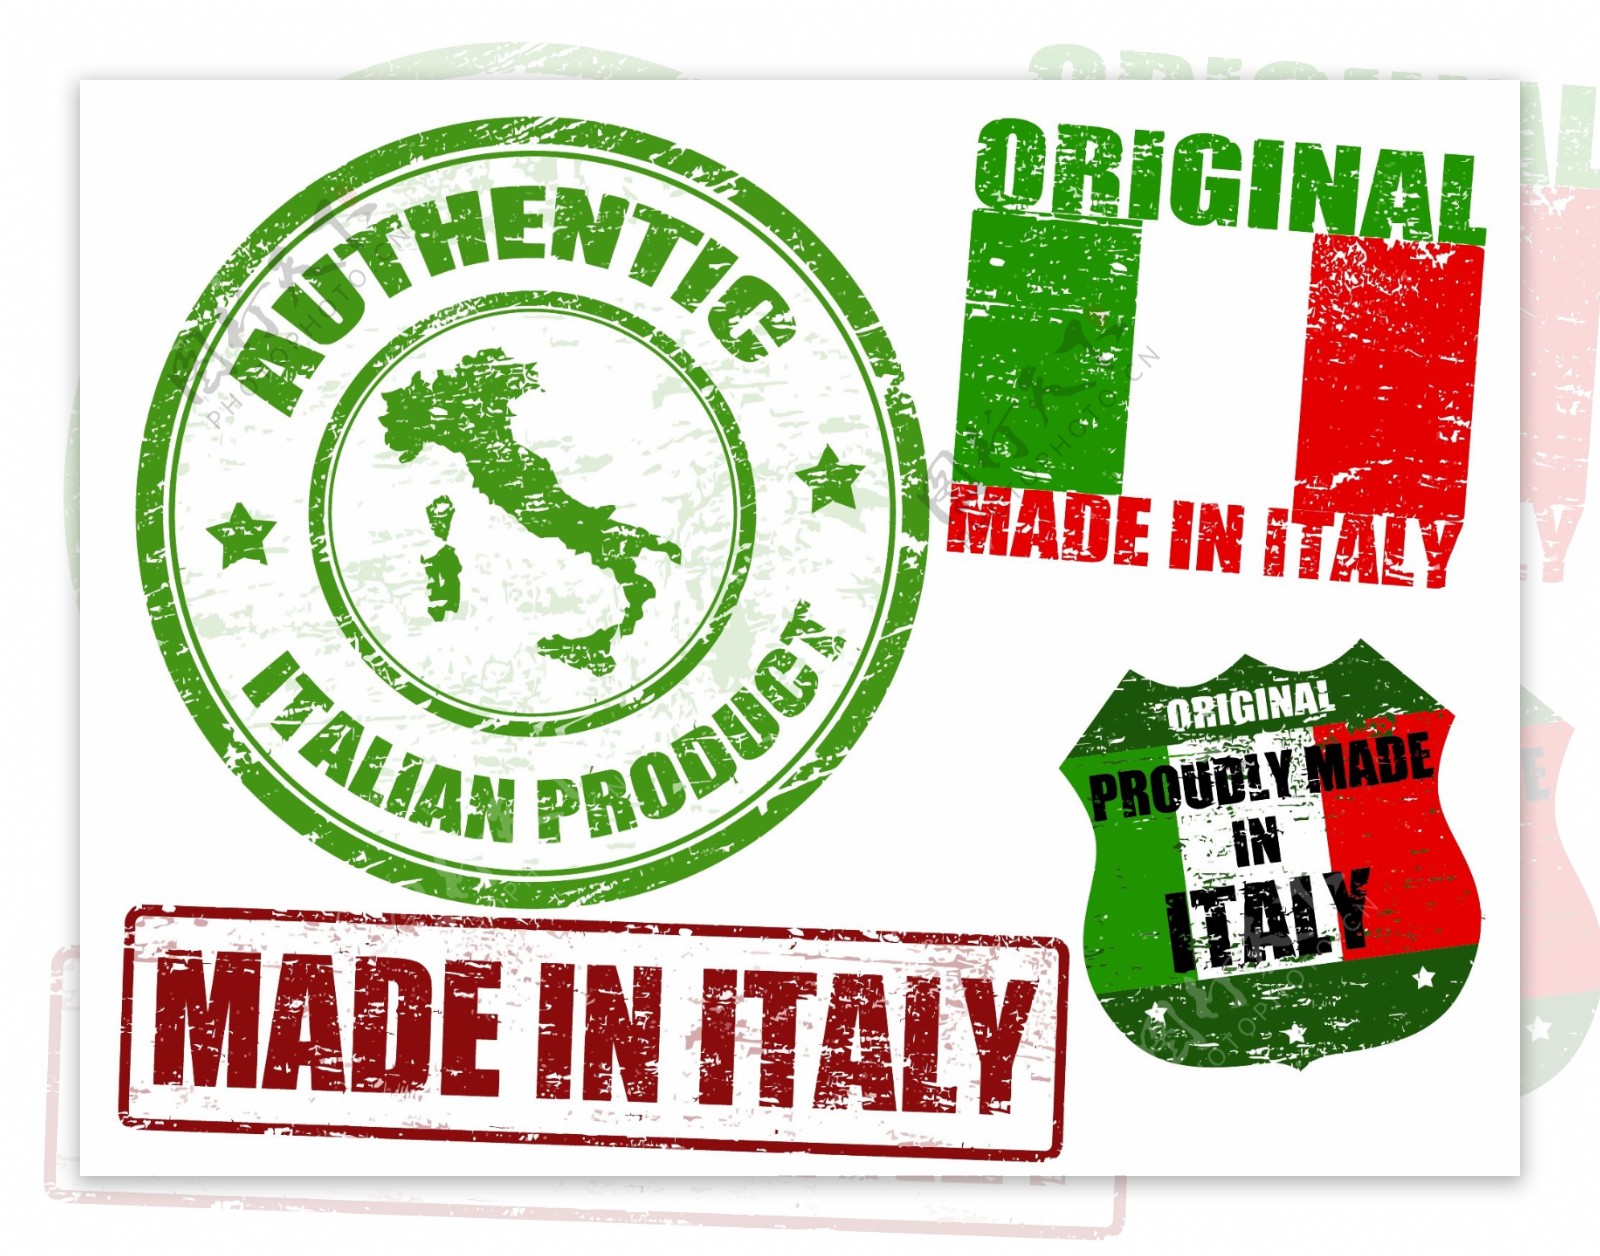 意大利印章标签邮戳图片